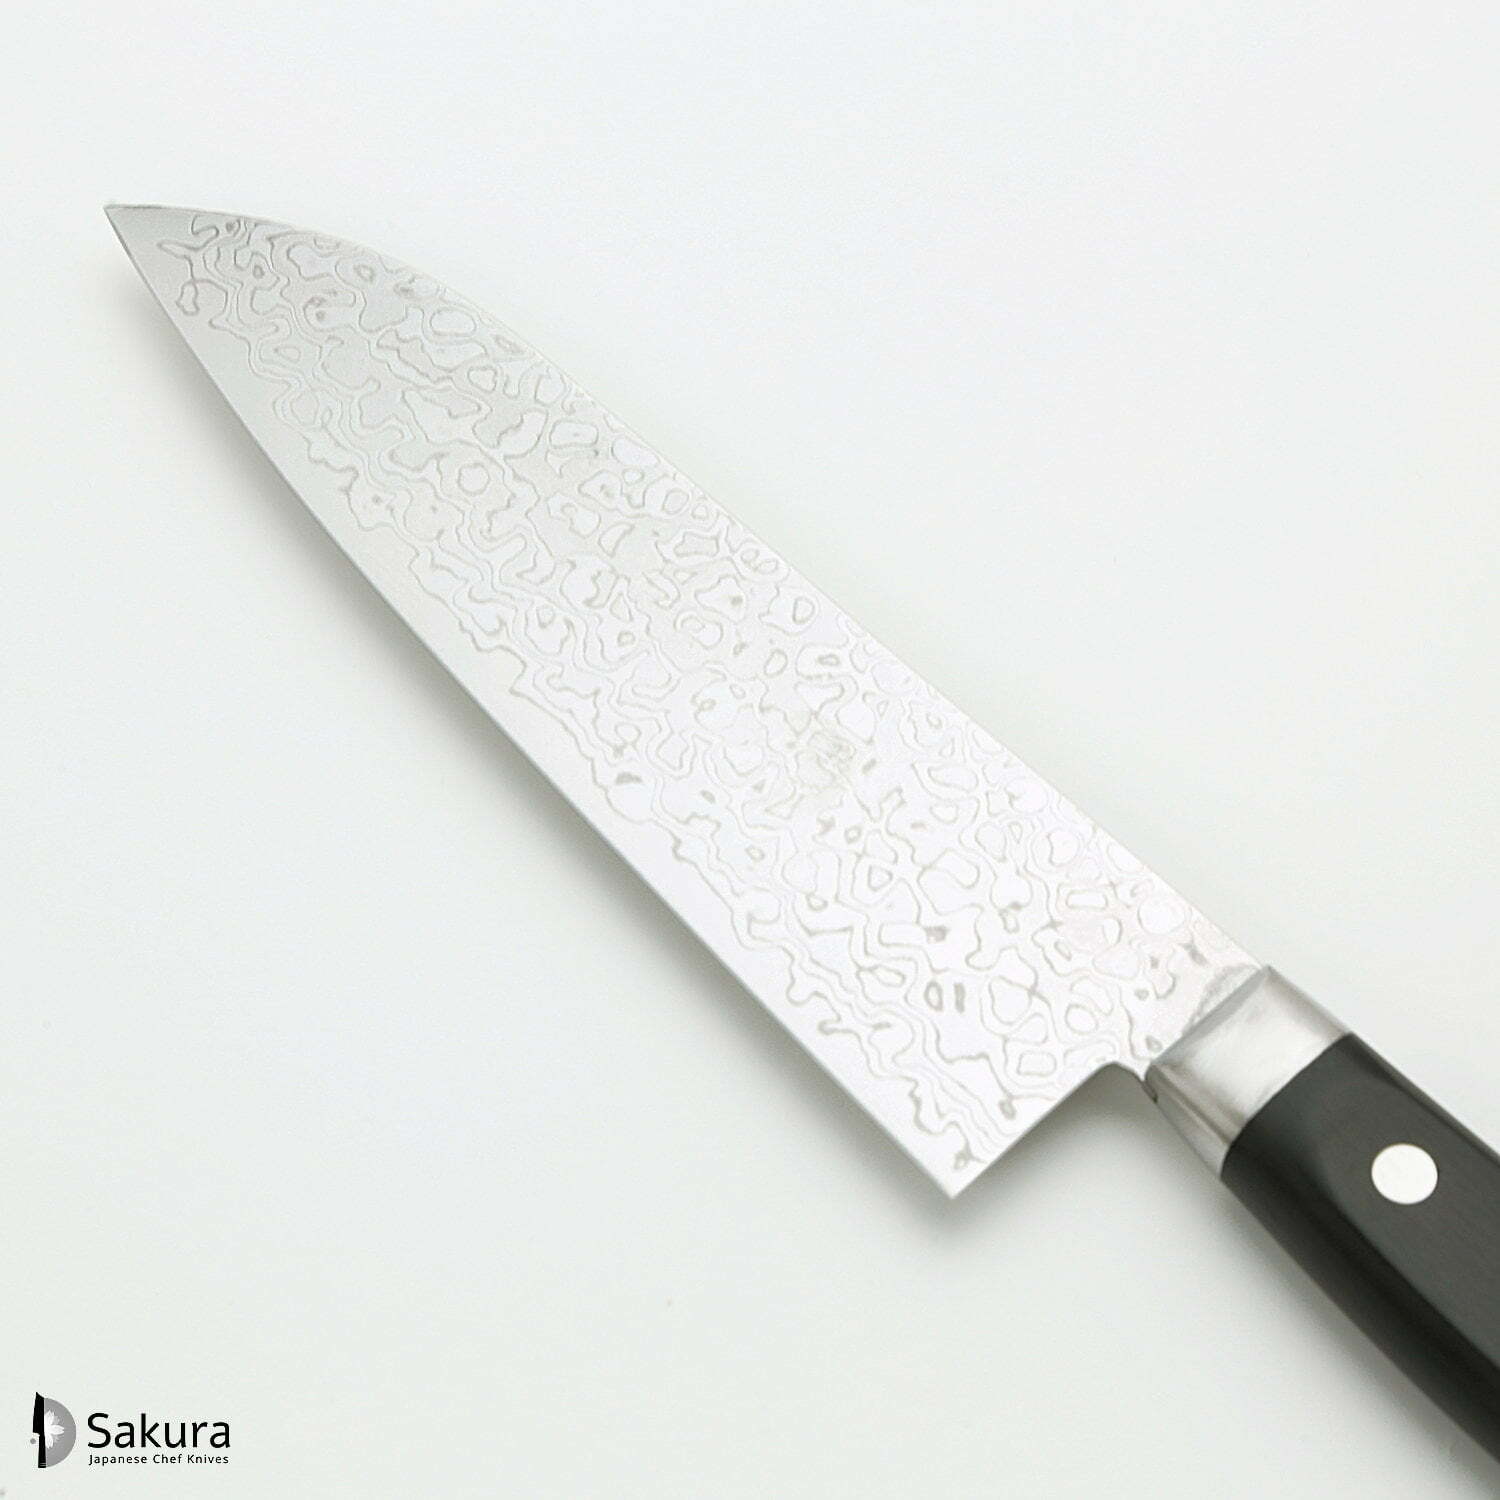 סכין רב-תכליתית סָנטוֹקוּ 170מ״מ מחושלת בעבודת יד 45 שכבות: פלדת פחמן יפנית AUS10 עטופה 44 שכבות פלדת דמשק אל-חלד גימור דמשק מראה 45 שכבות סאקאיי טקיוקי יפן